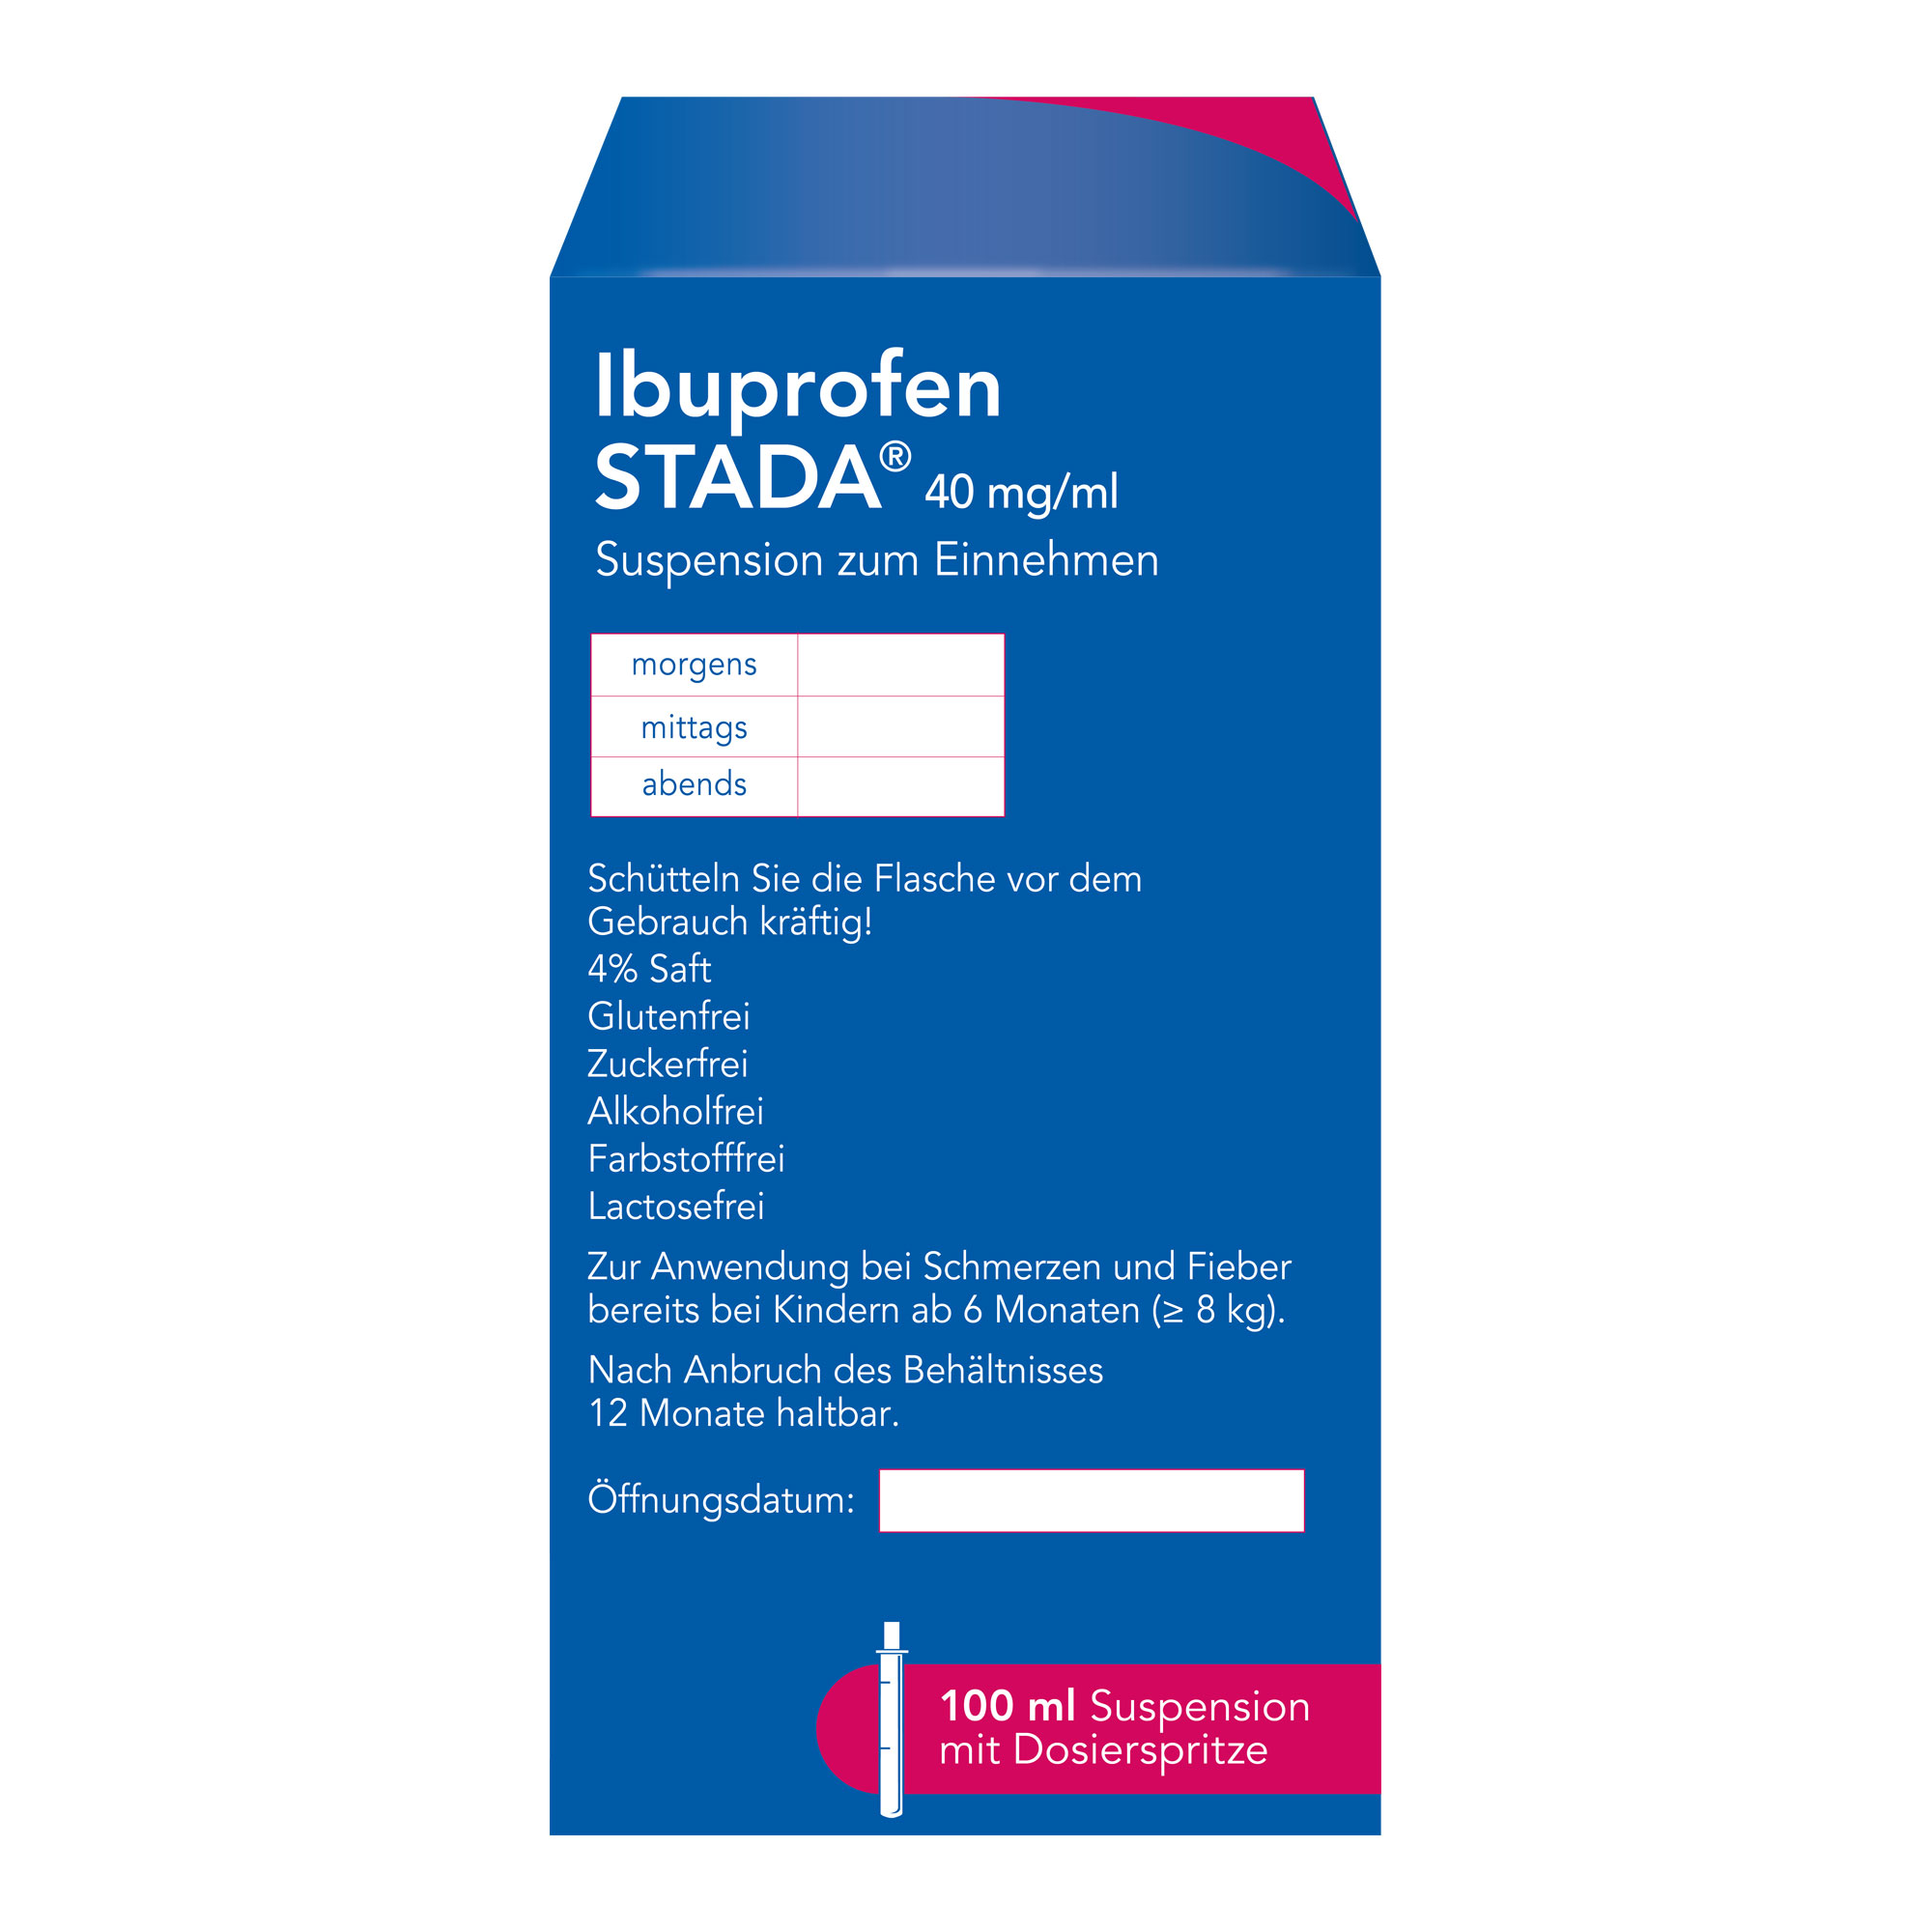 Ibuprofen Stada 40 mg/ml Suspension zum Einnehmen Rückseite